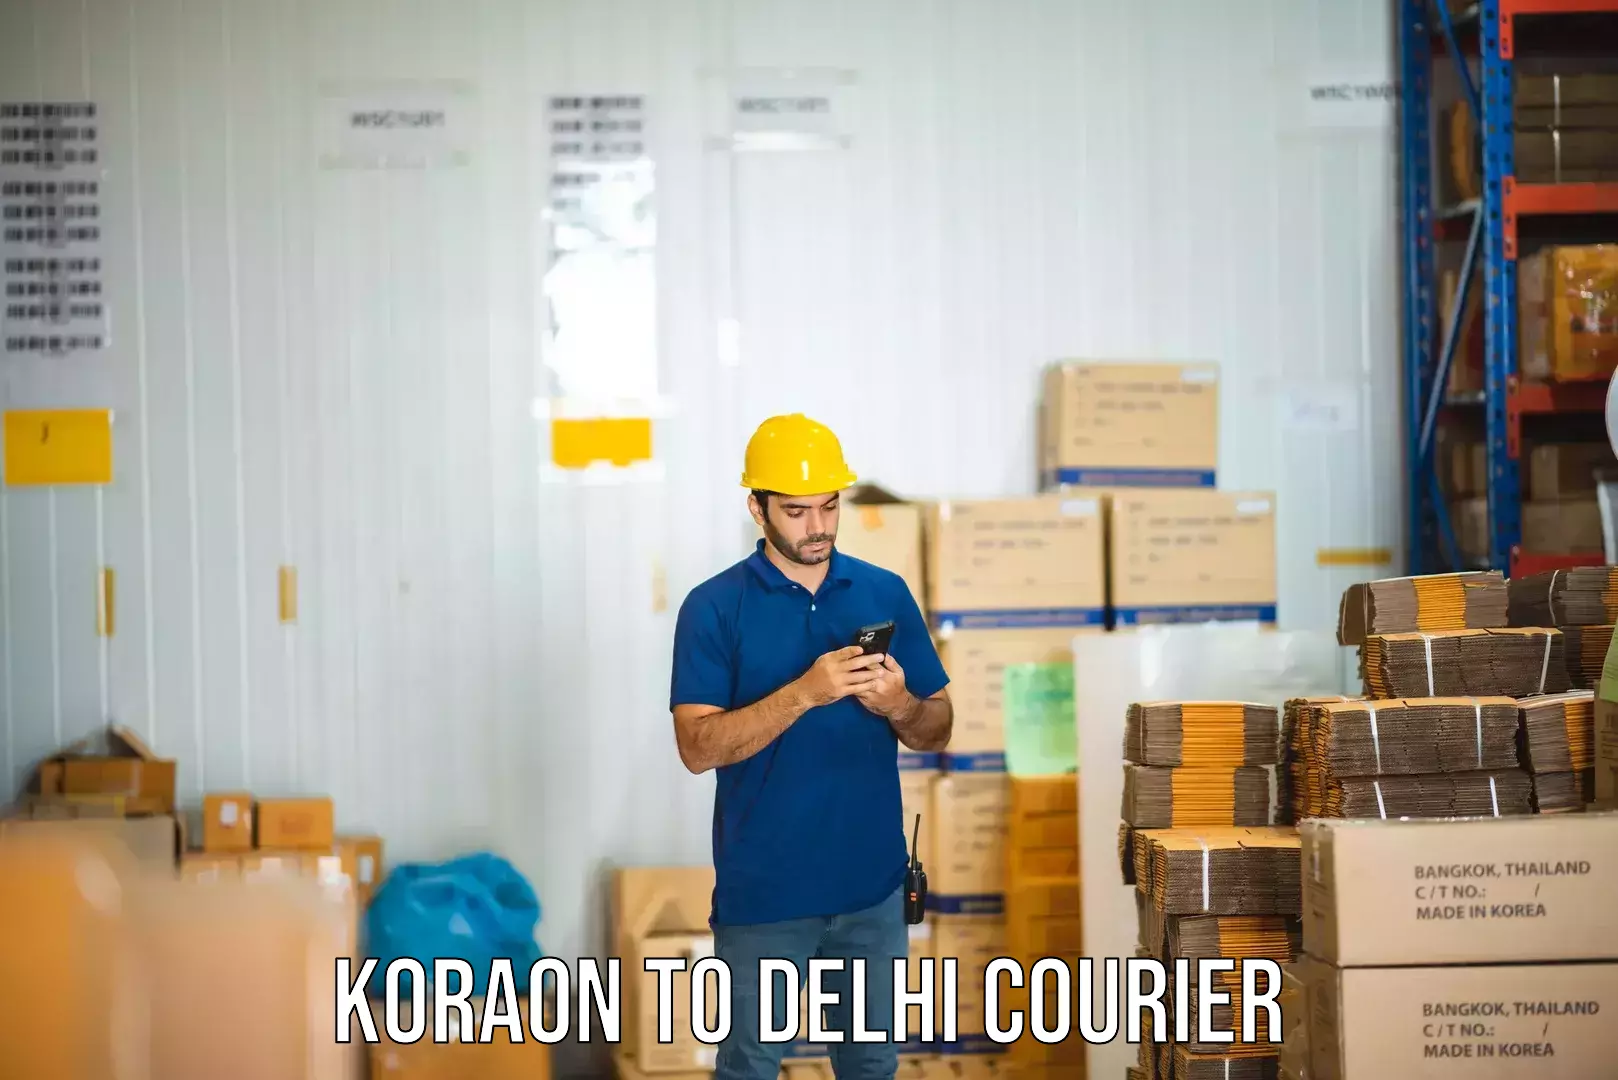 Weekend courier service Koraon to Delhi